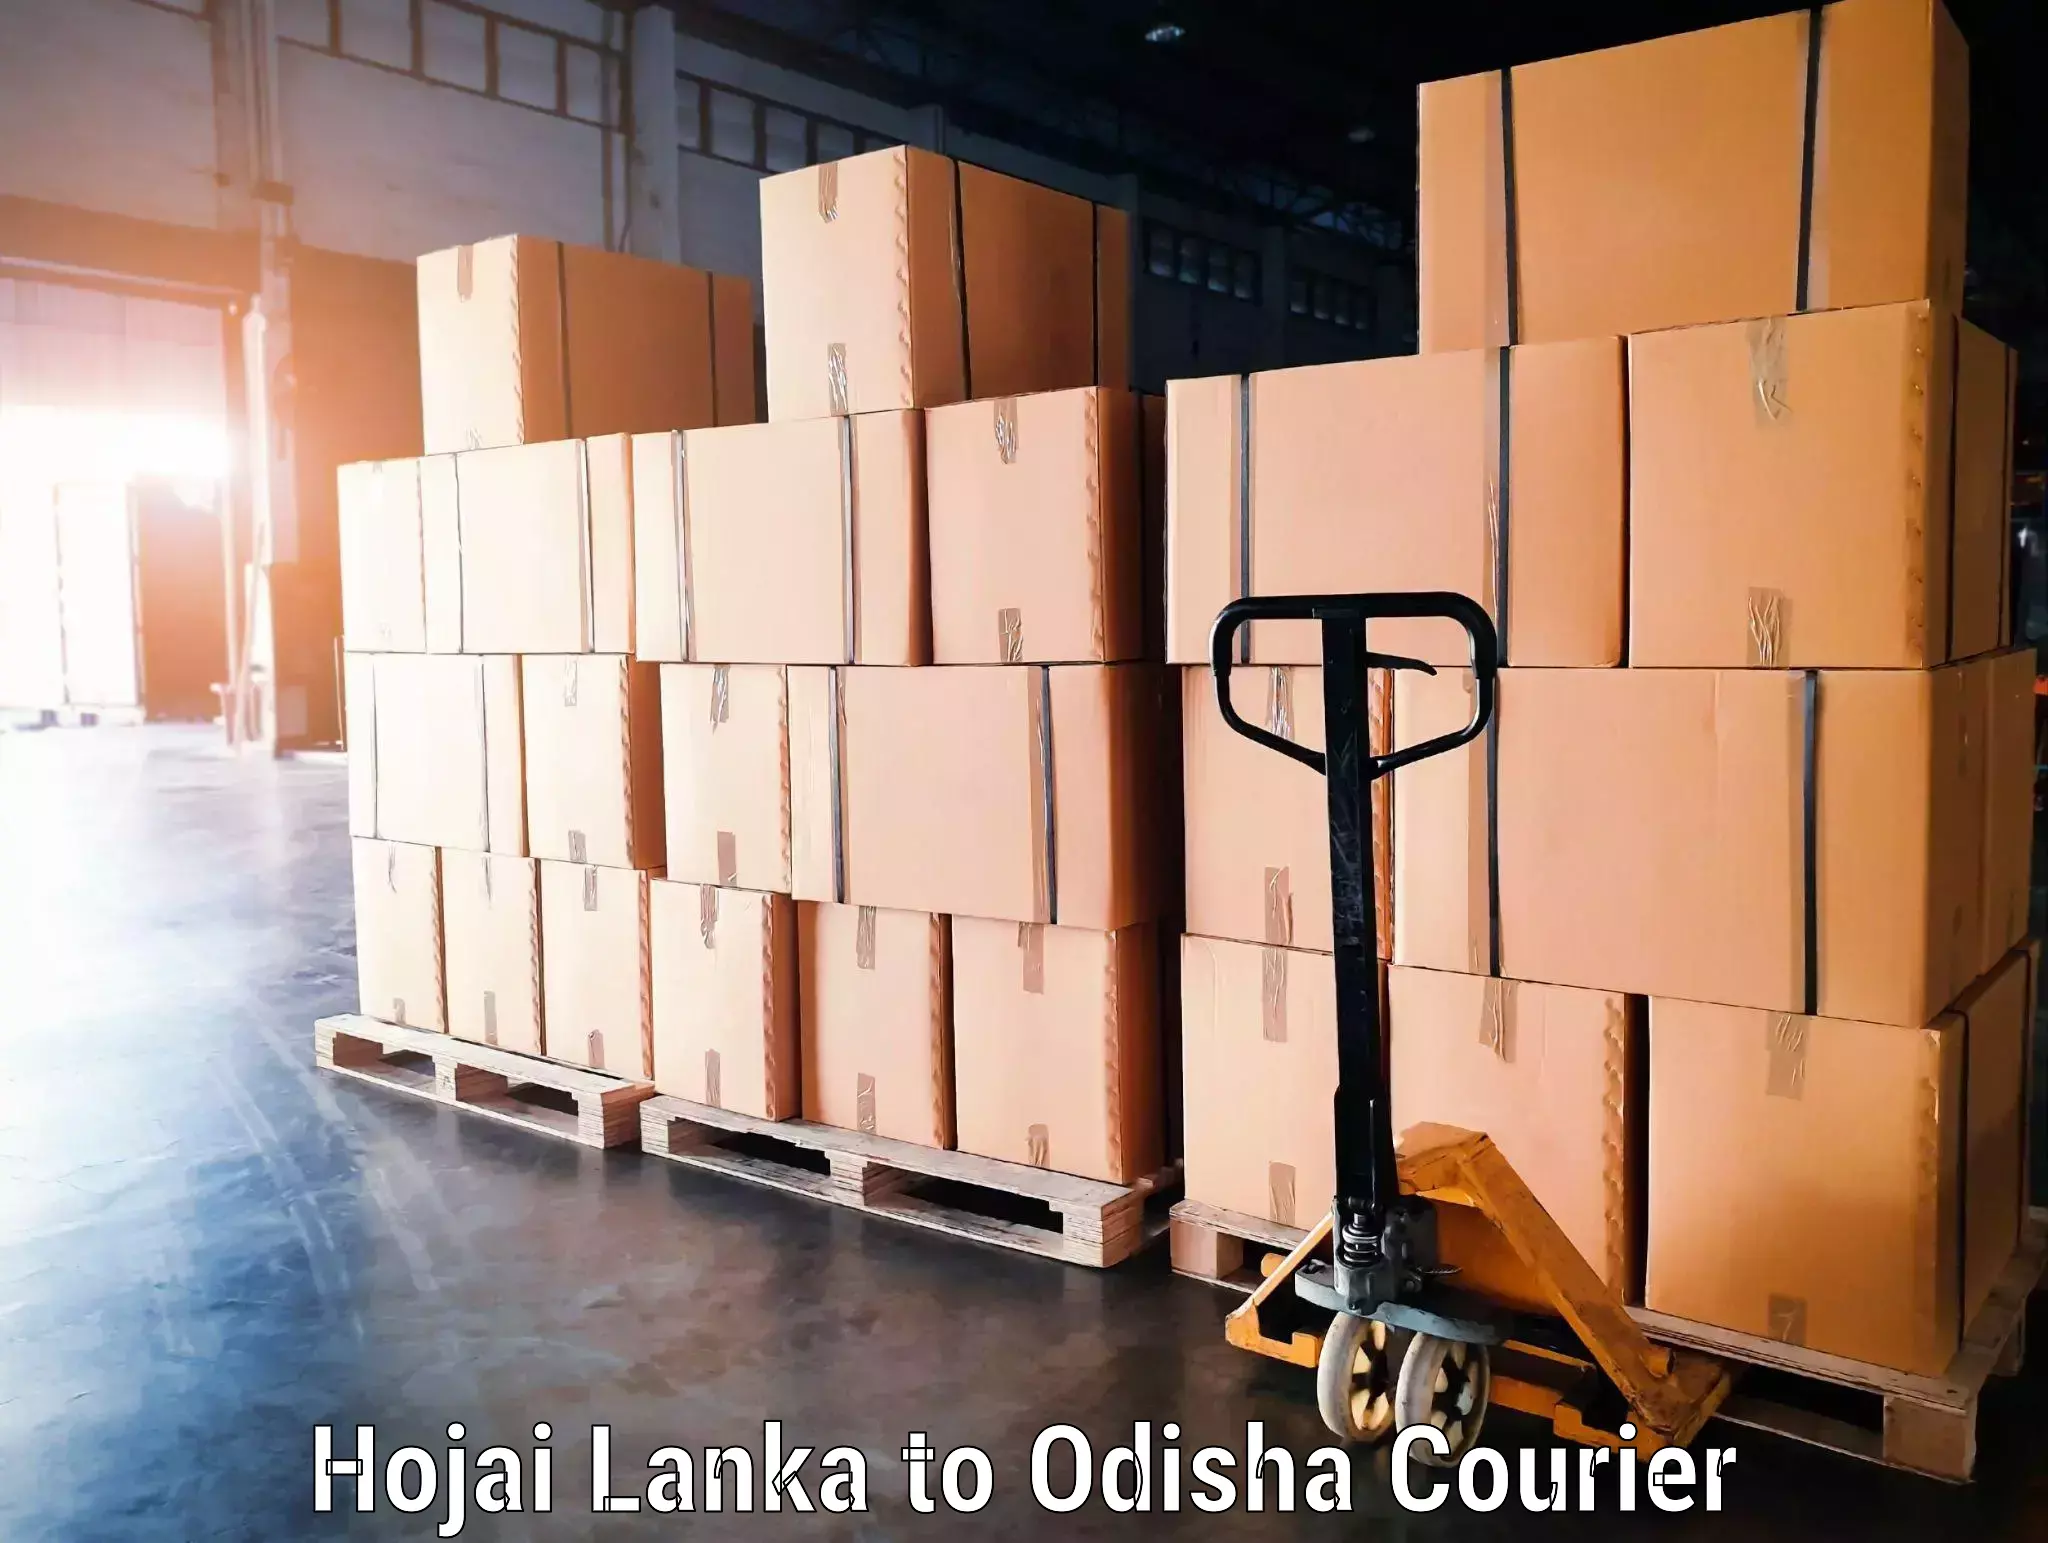 Tailored baggage transport in Hojai Lanka to Kantabanji